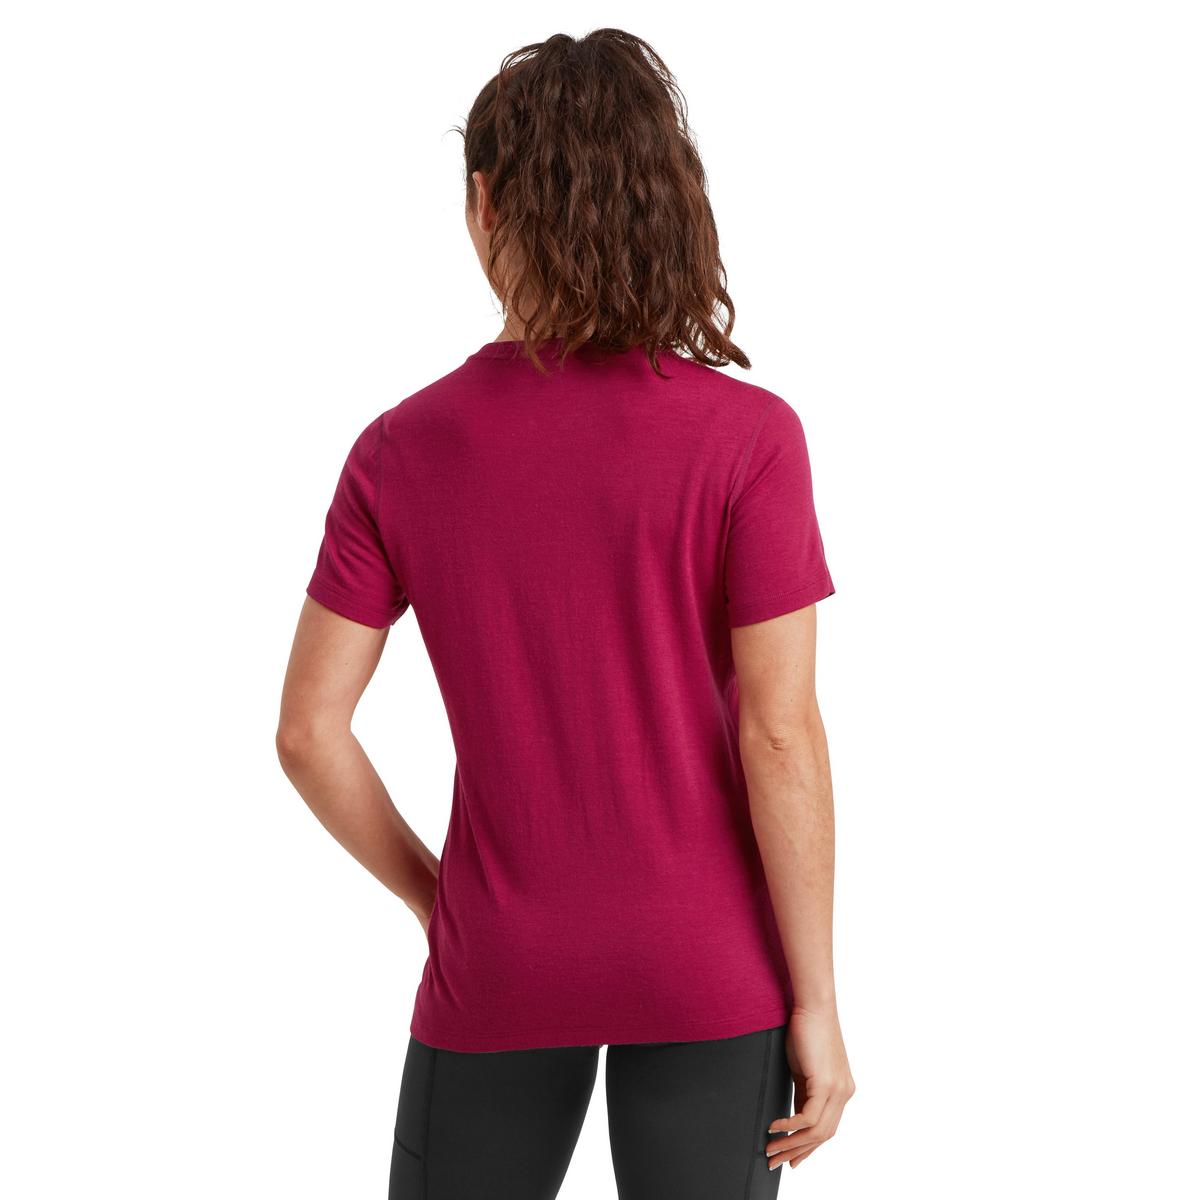 Artilect Women's Exposure Short-Sleeve T-Shirt - Pink